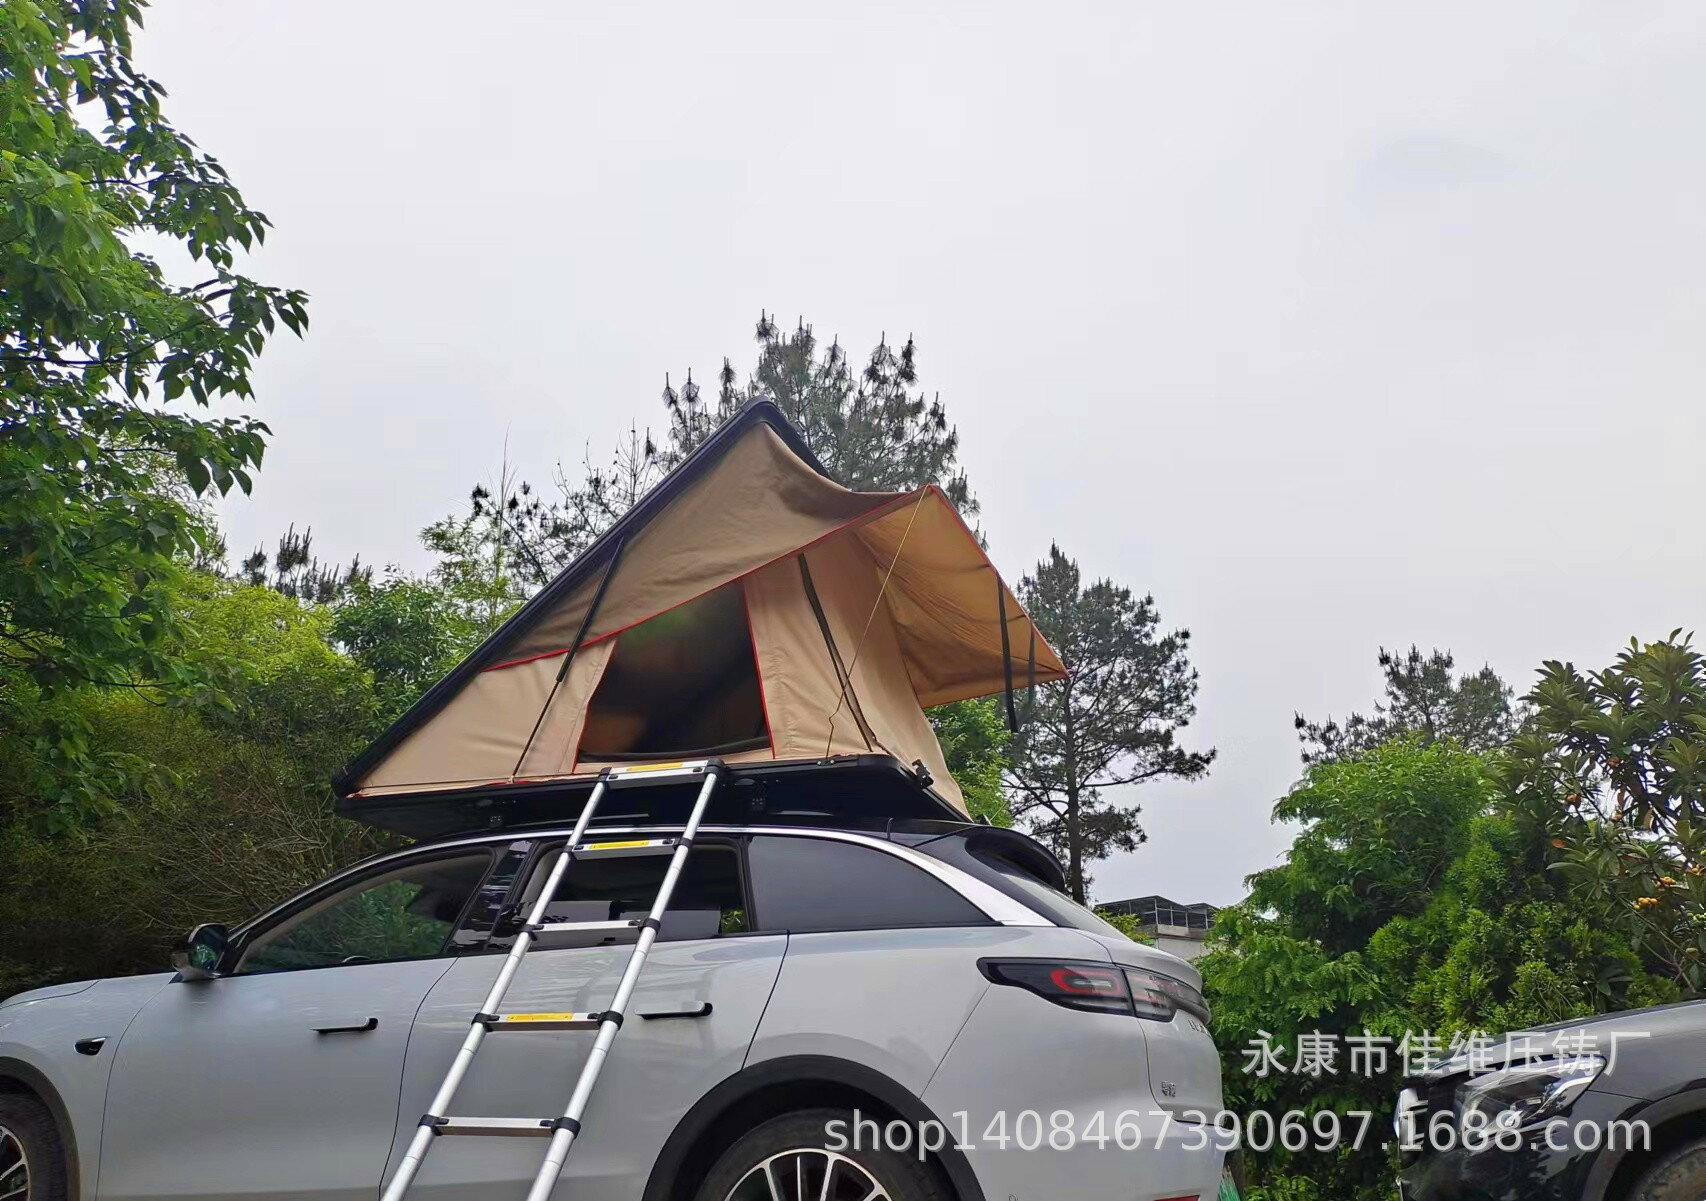 帳篷 cr roof en鋁合金戶外雙人自駕戶外營硬殼車頂帳篷